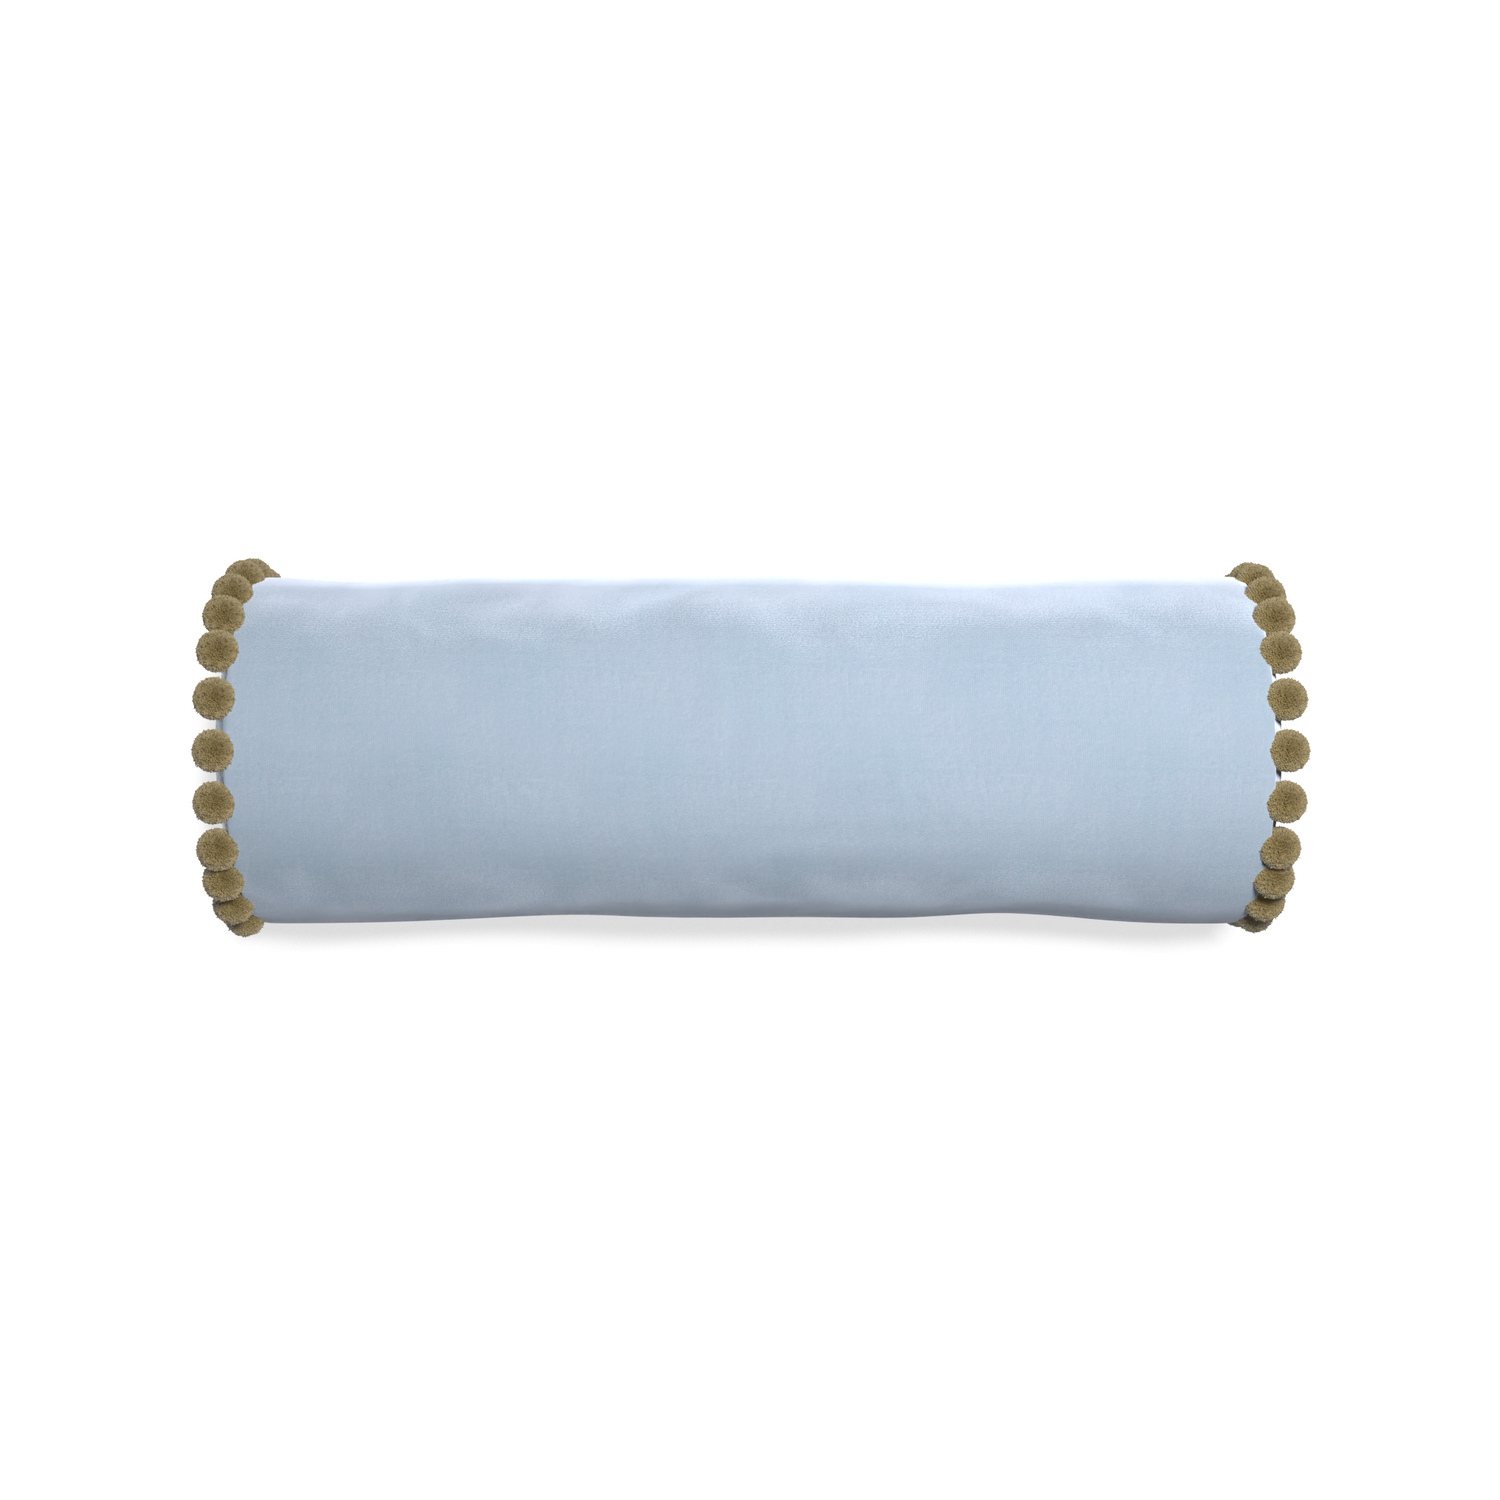 Bolster sky velvet custom pillow with olive pom pom on white background